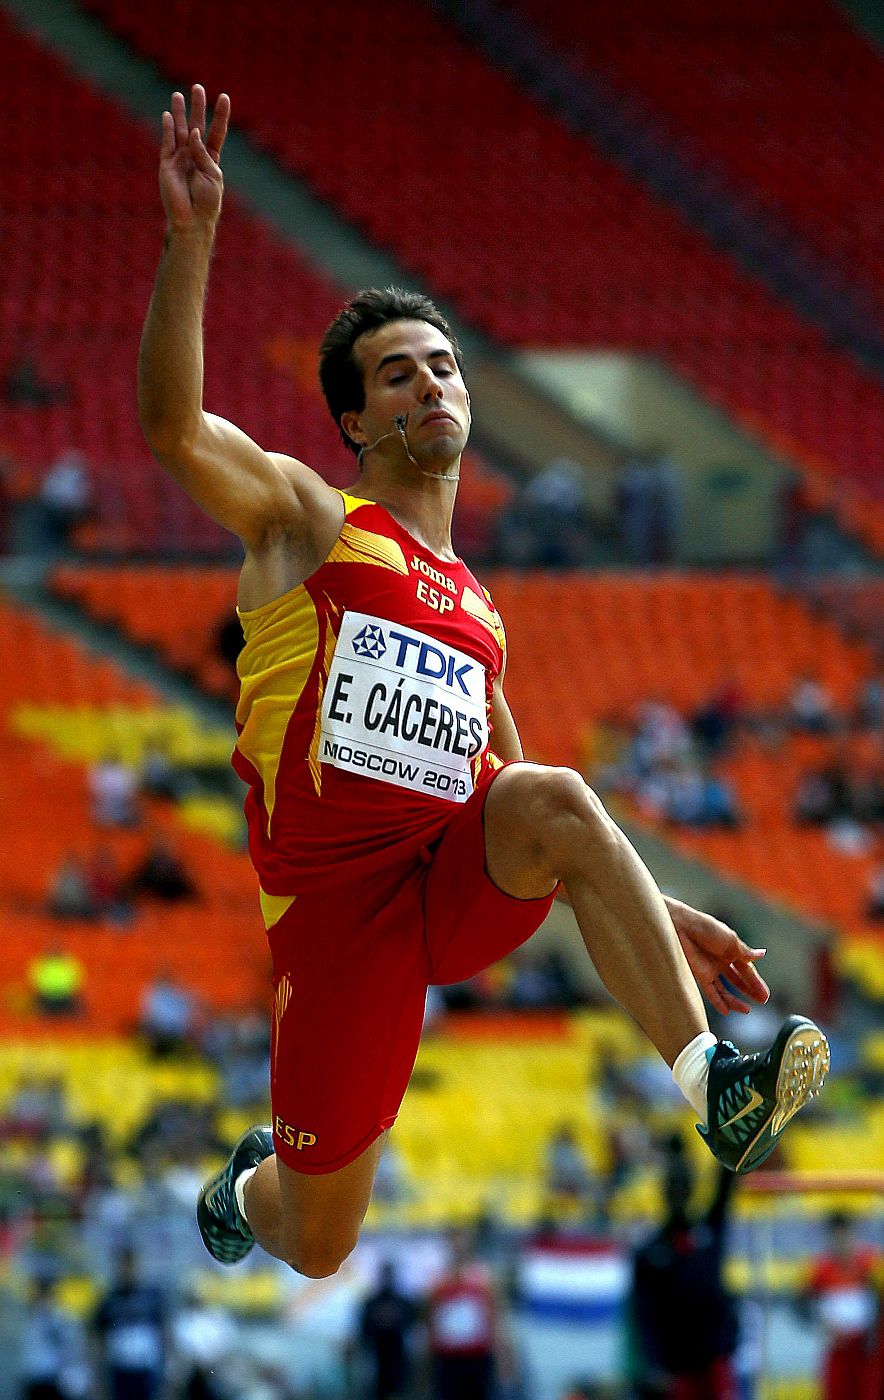 El atleta español Eusebio Cáceres buscará la medalla en la final de salto de longitud.